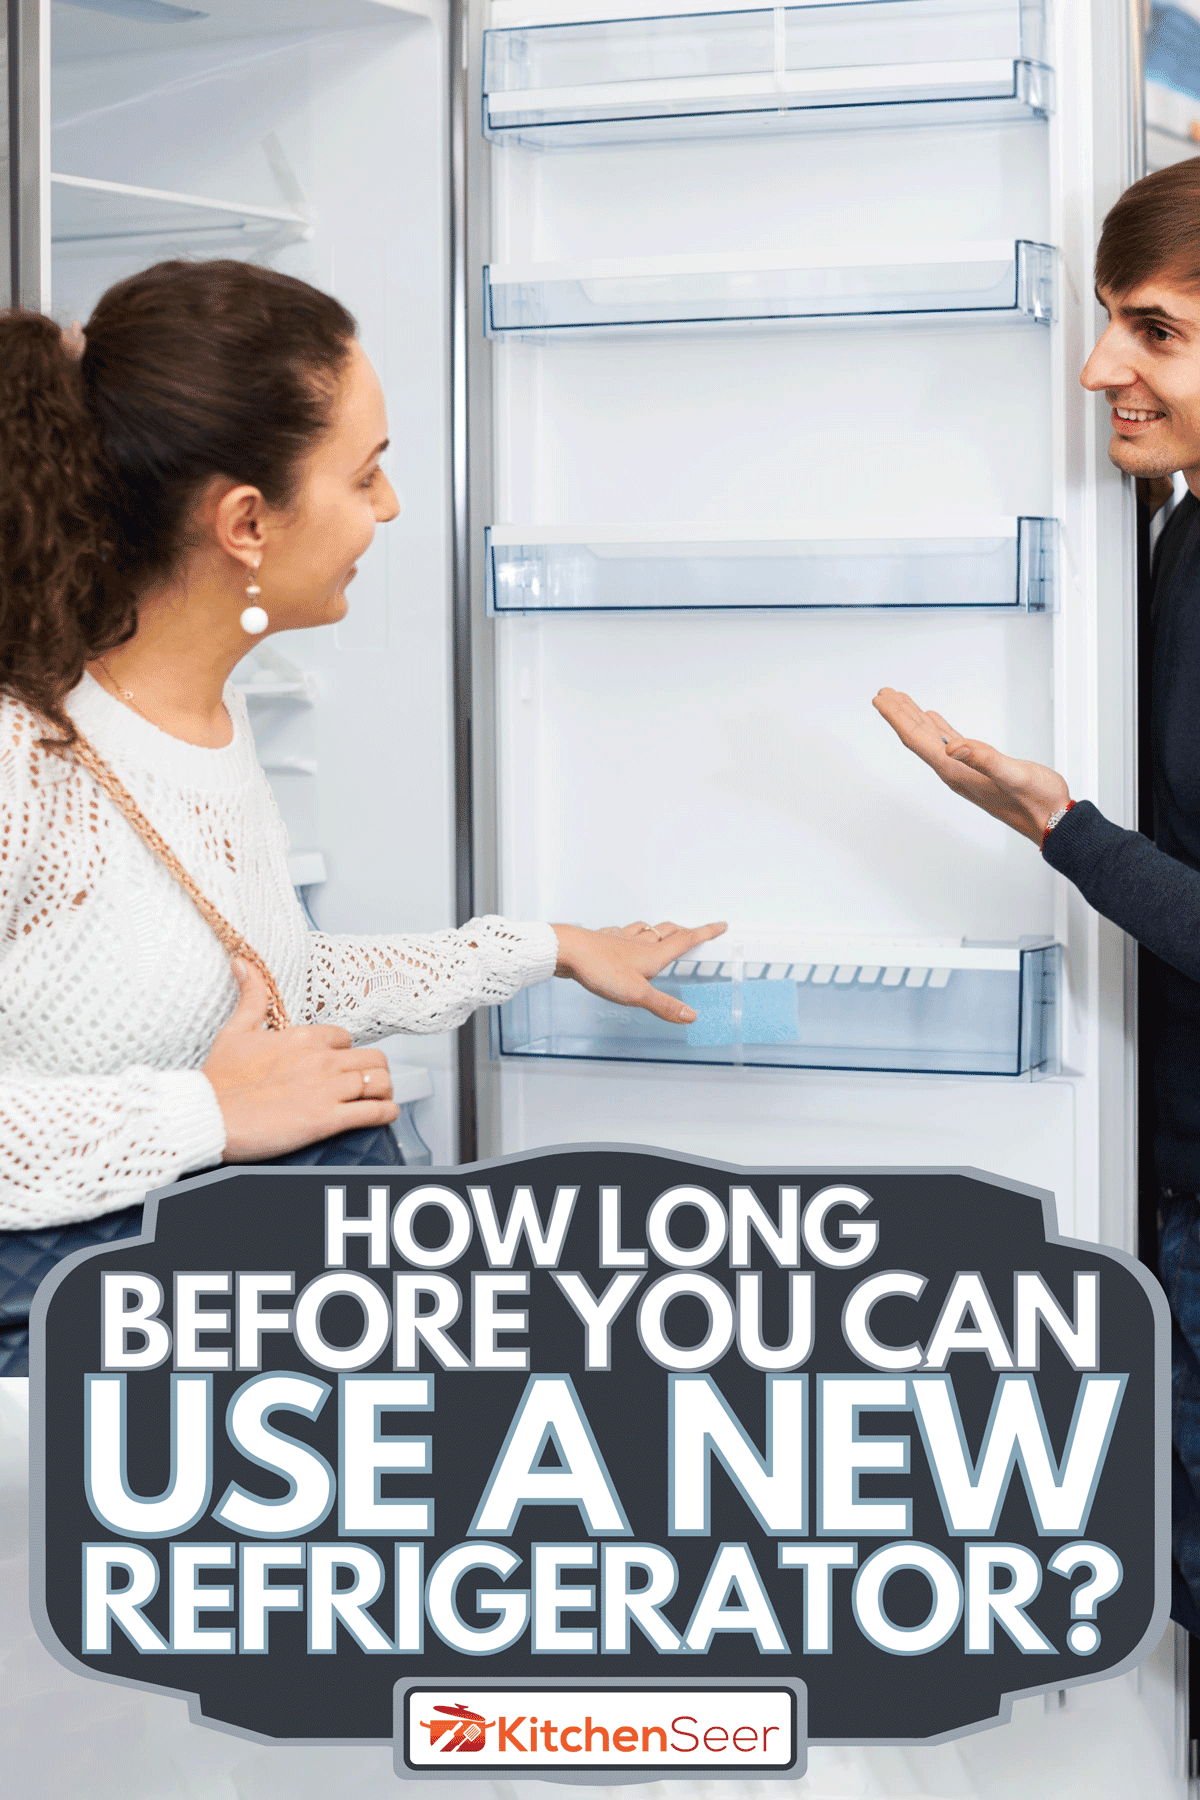 一个客户选择新的大冰箱在家用电器部分,您可以使用一个新冰箱之前多久?